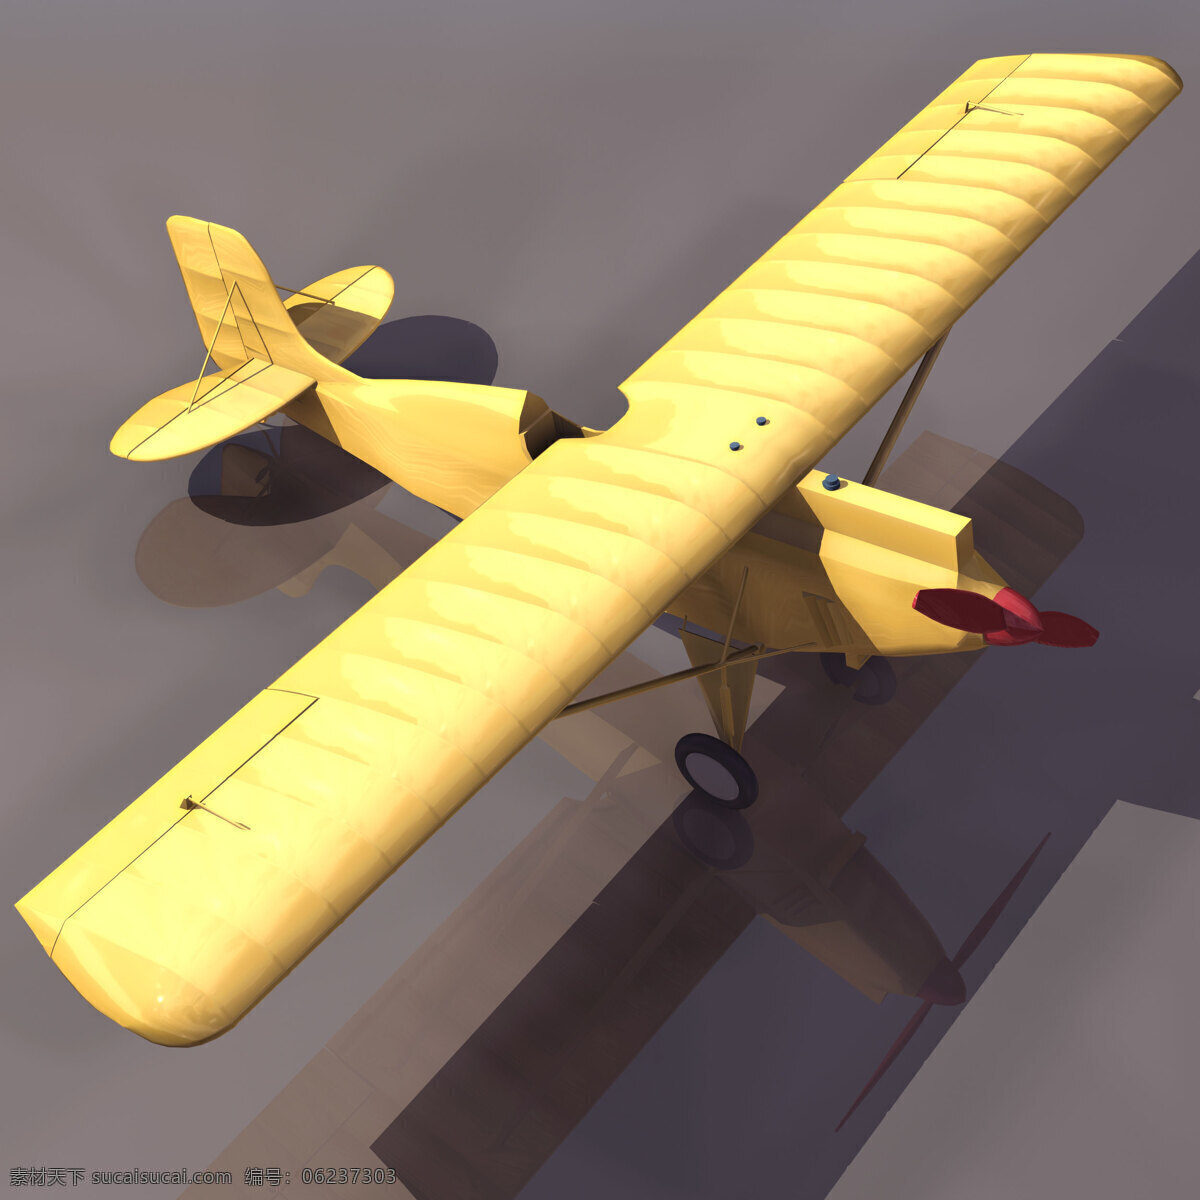 飞机模型 tcorb 民用飞机 3d模型素材 电器模型